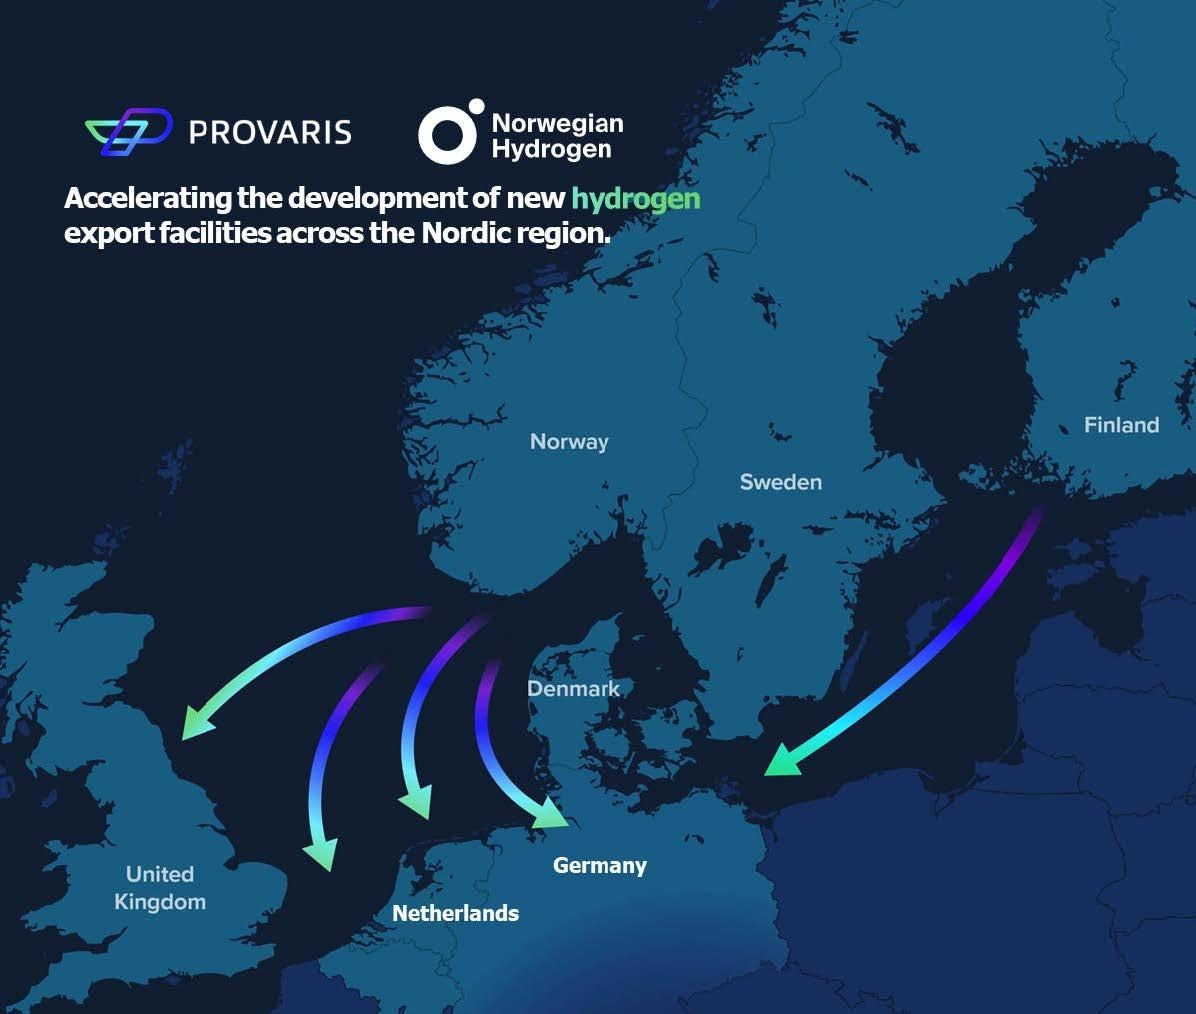 Norwegian Hydrogen and Provaris Energy Strengthen Ties to Accelerate Hydrogen Export Development in the Nordics